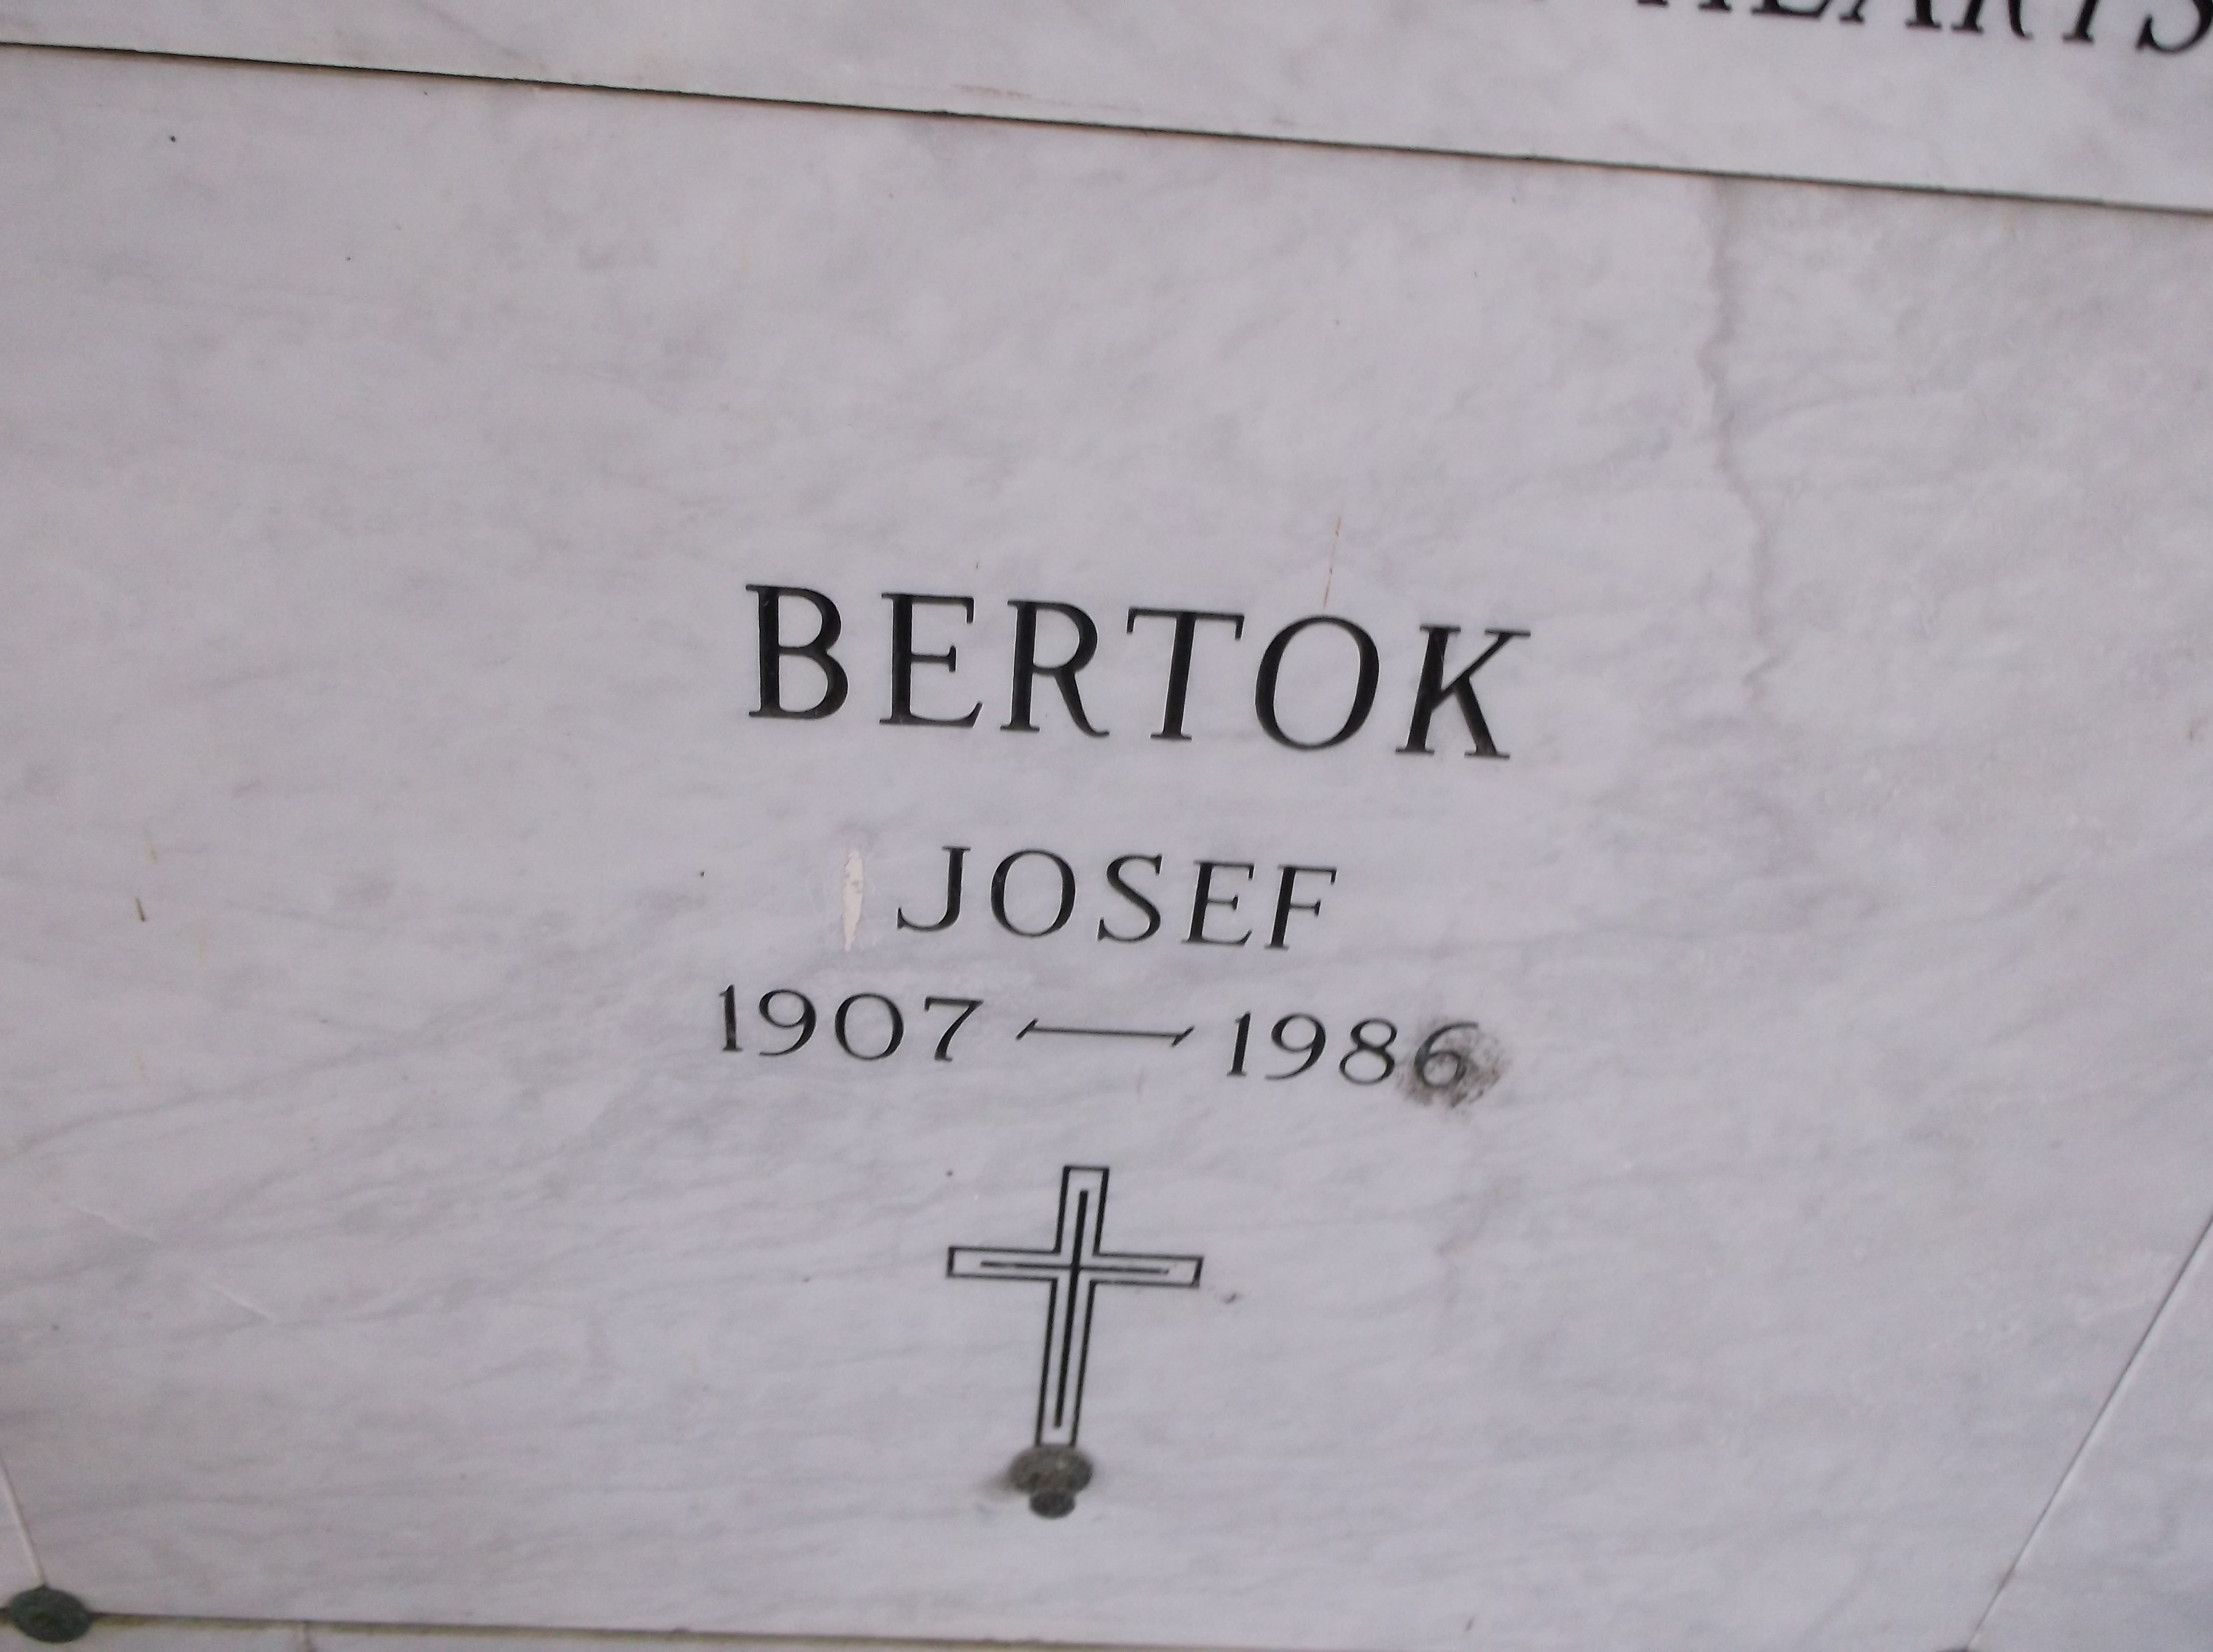 Josef Bertok